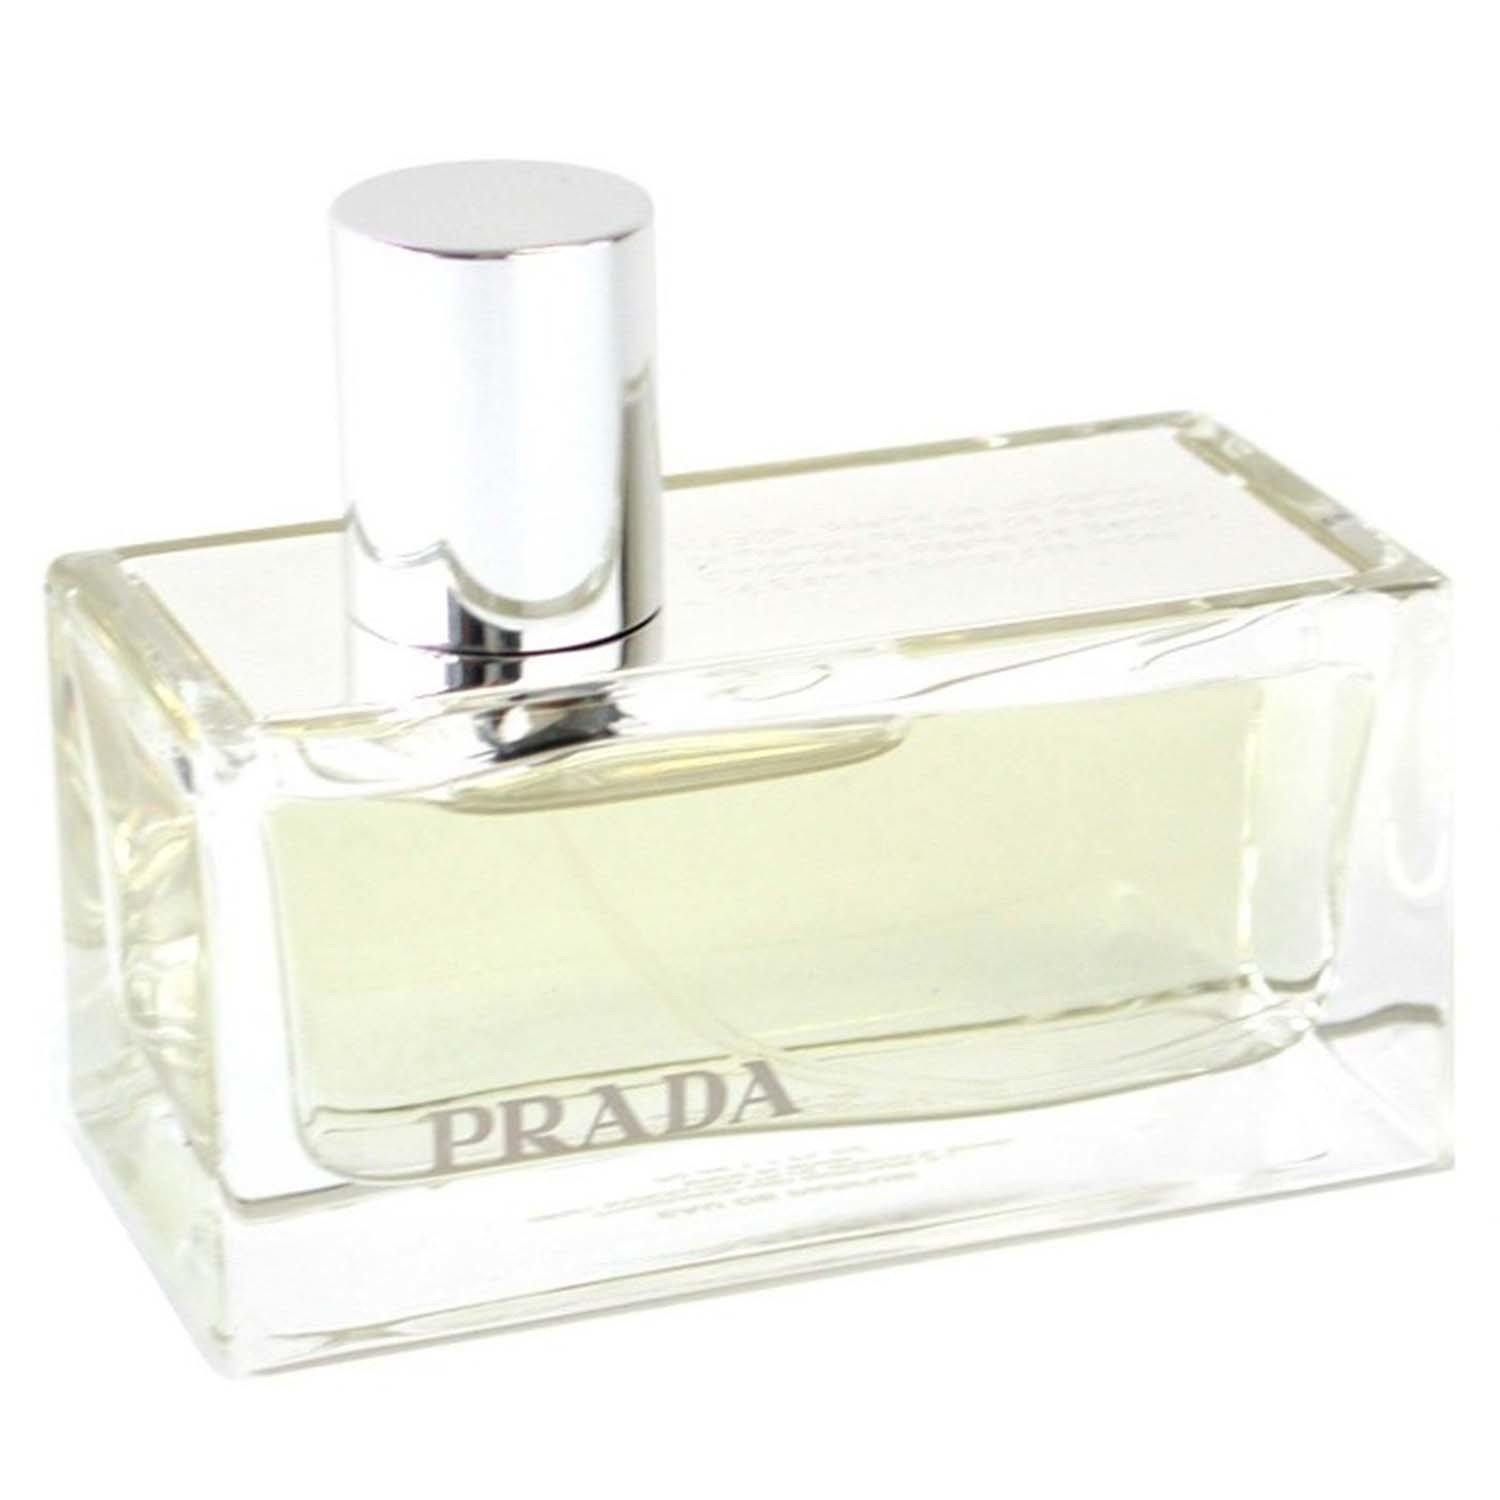 Prada 香水購物比價 - 2021年7月 | FindPrice 價格網